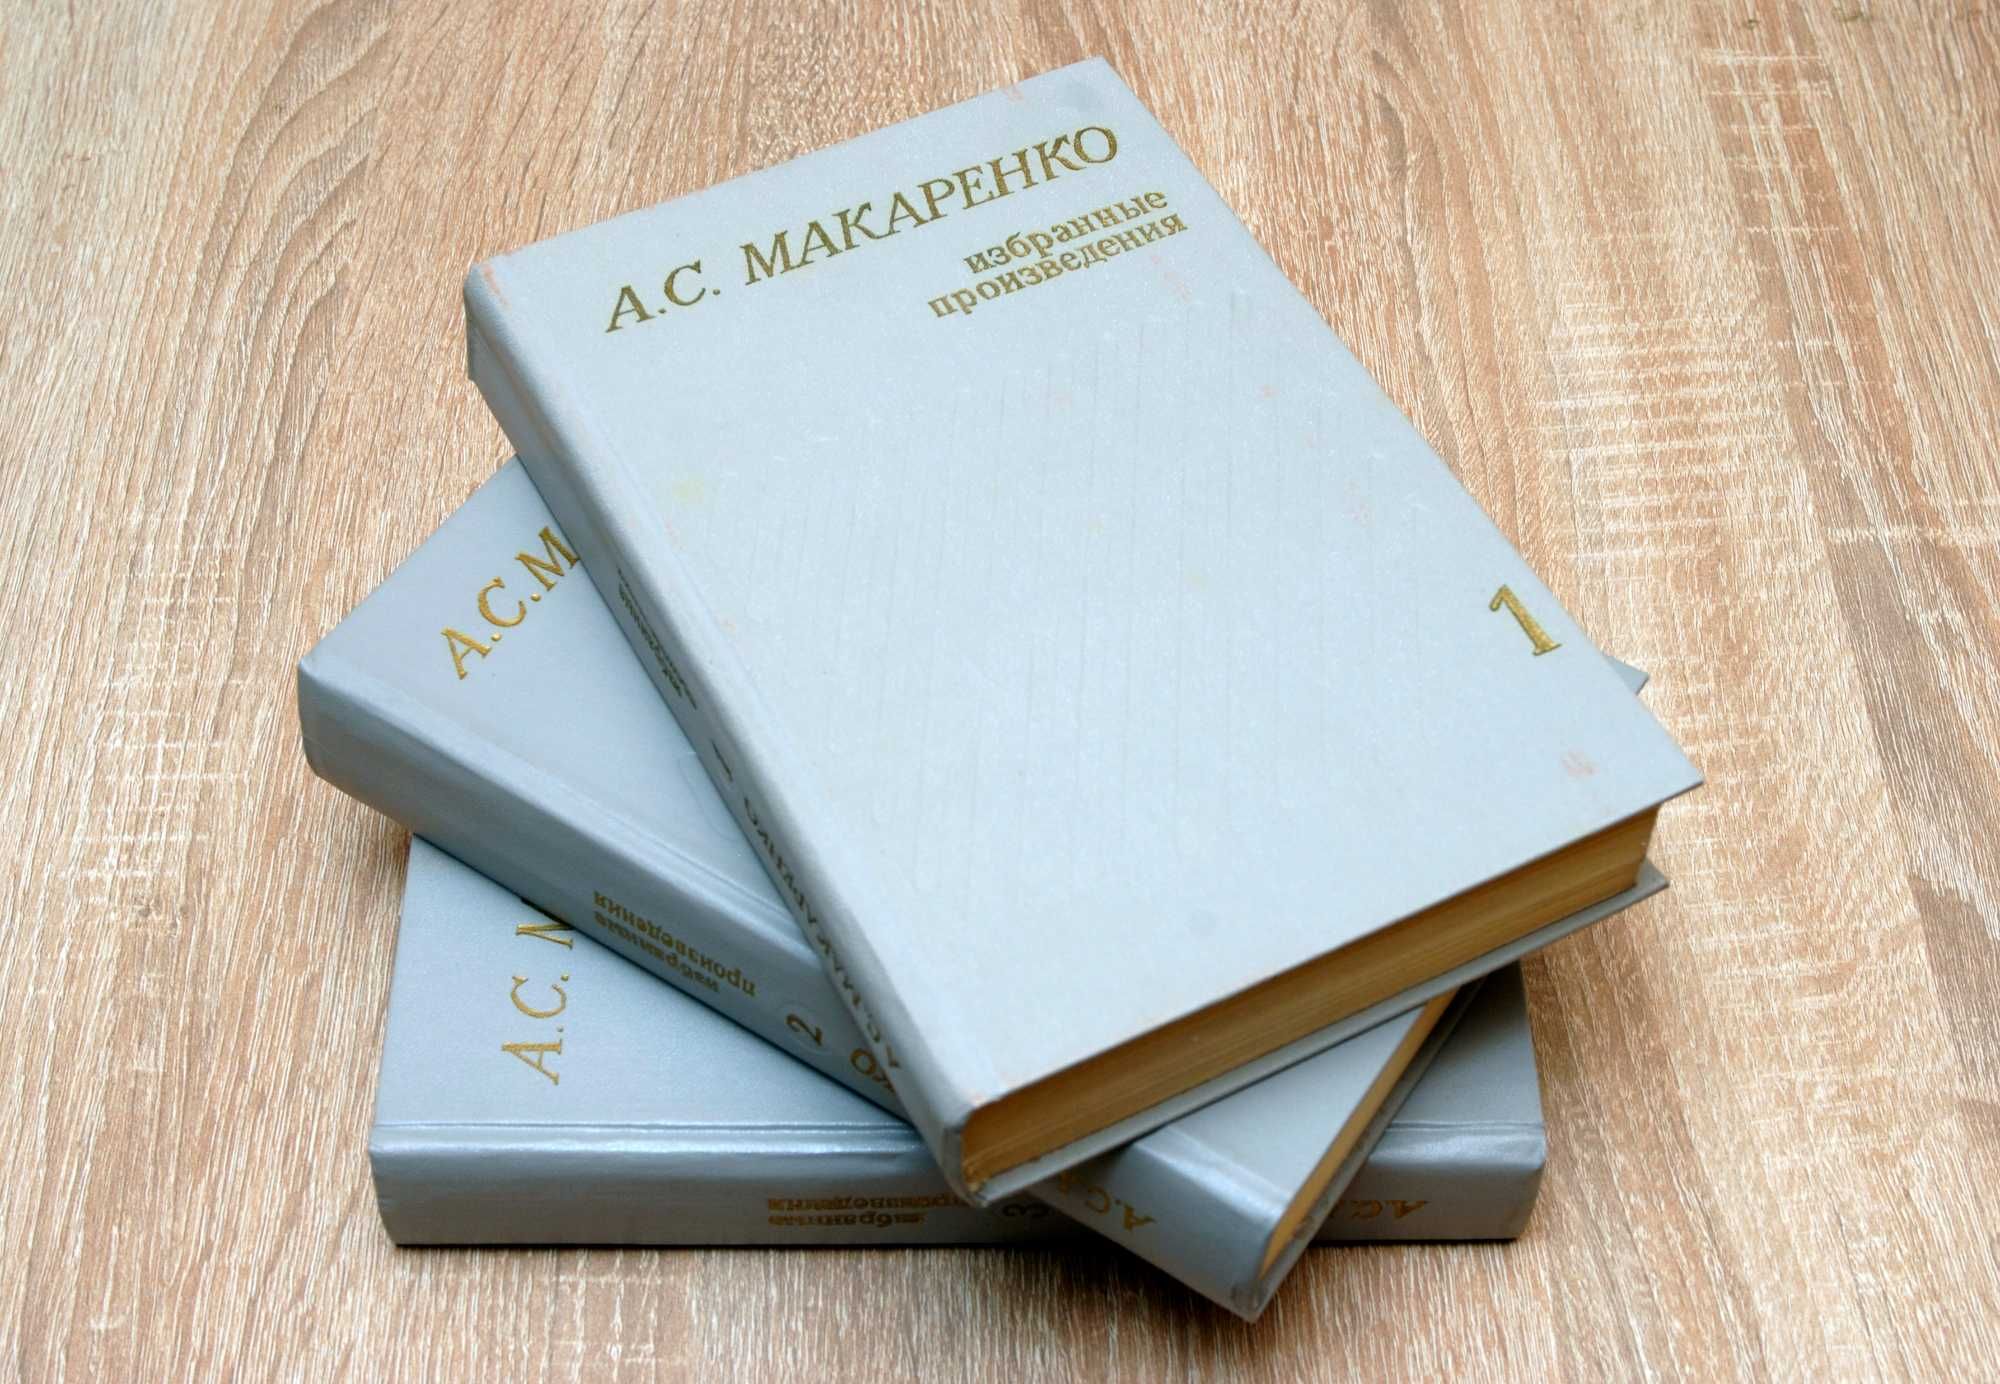 А.С. Макаренко  "Избранные произведения" (в трех томах)